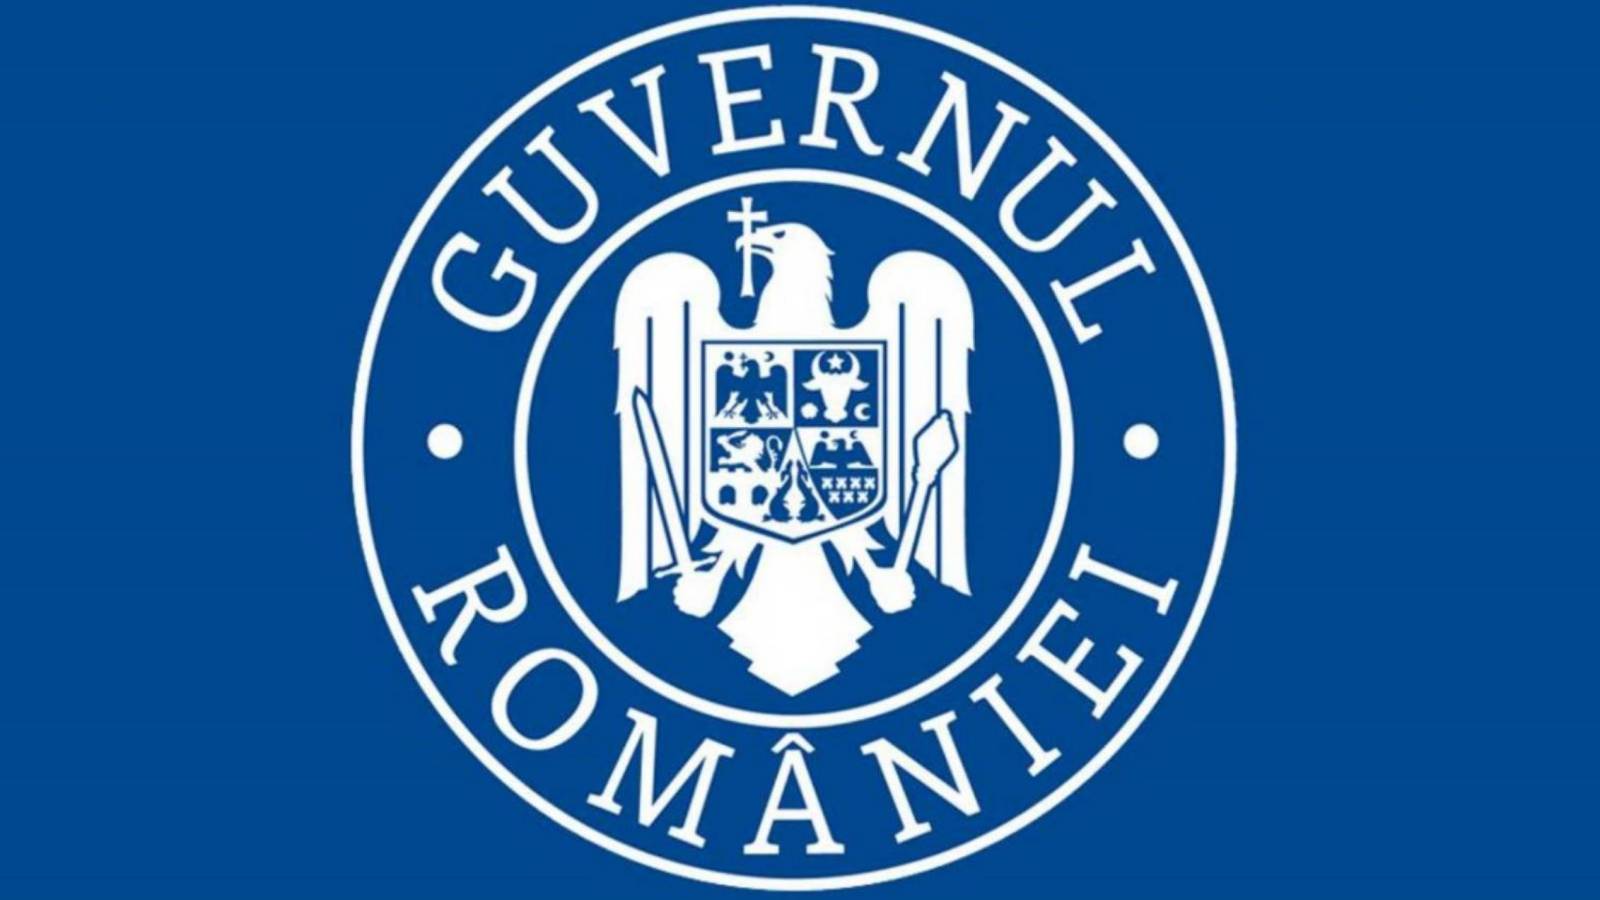 Der Impfstoff der rumänischen Regierung vom 1. April